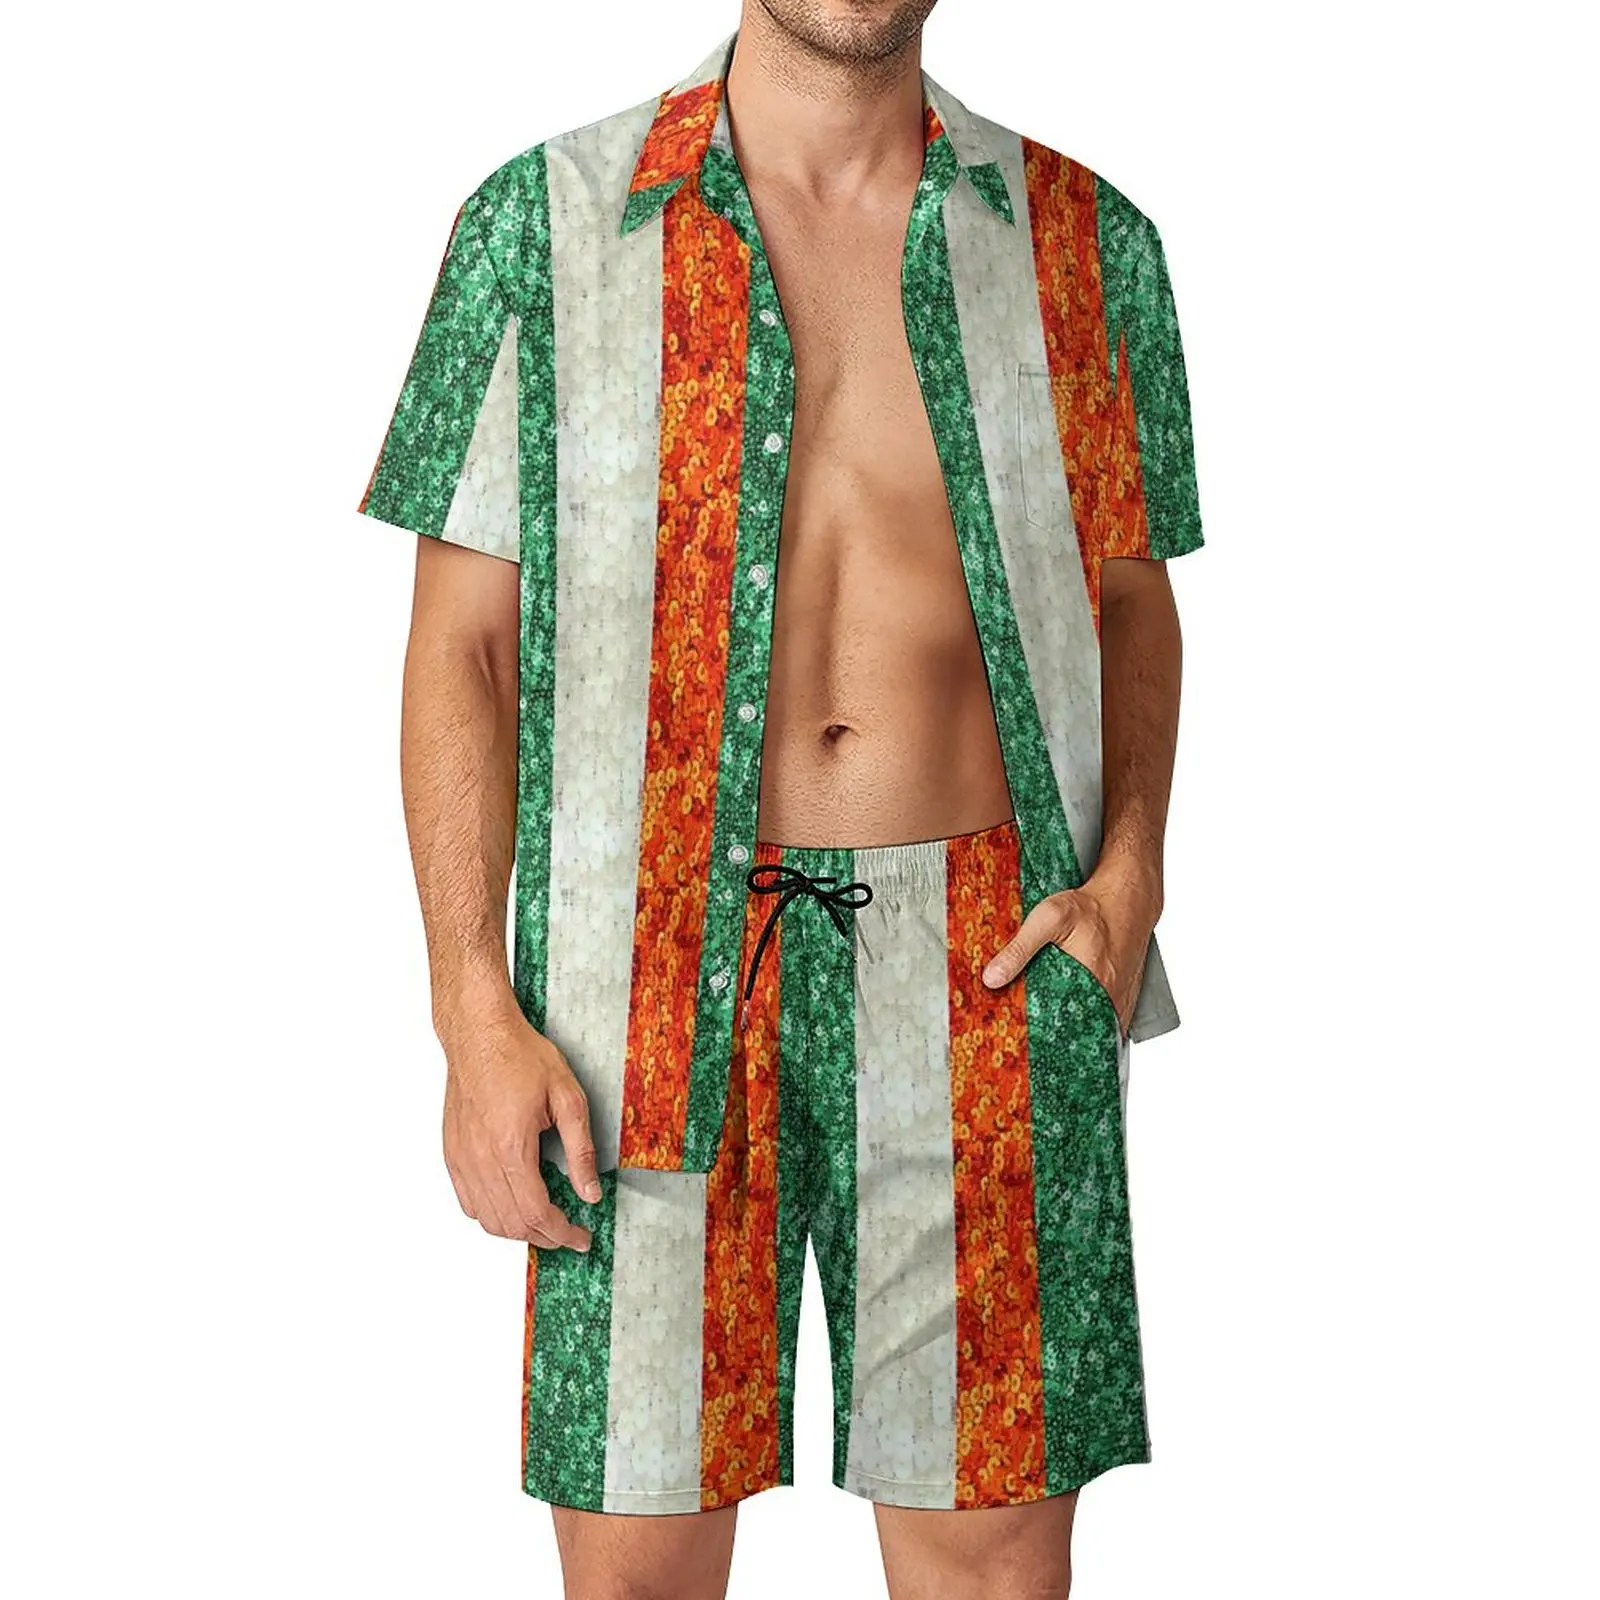 Ирландский трехцветный флаг, Ирландия, блестки, L, мужской пляжный костюм премиум-класса, костюм из 2 предметов, высокое качество, Размер США